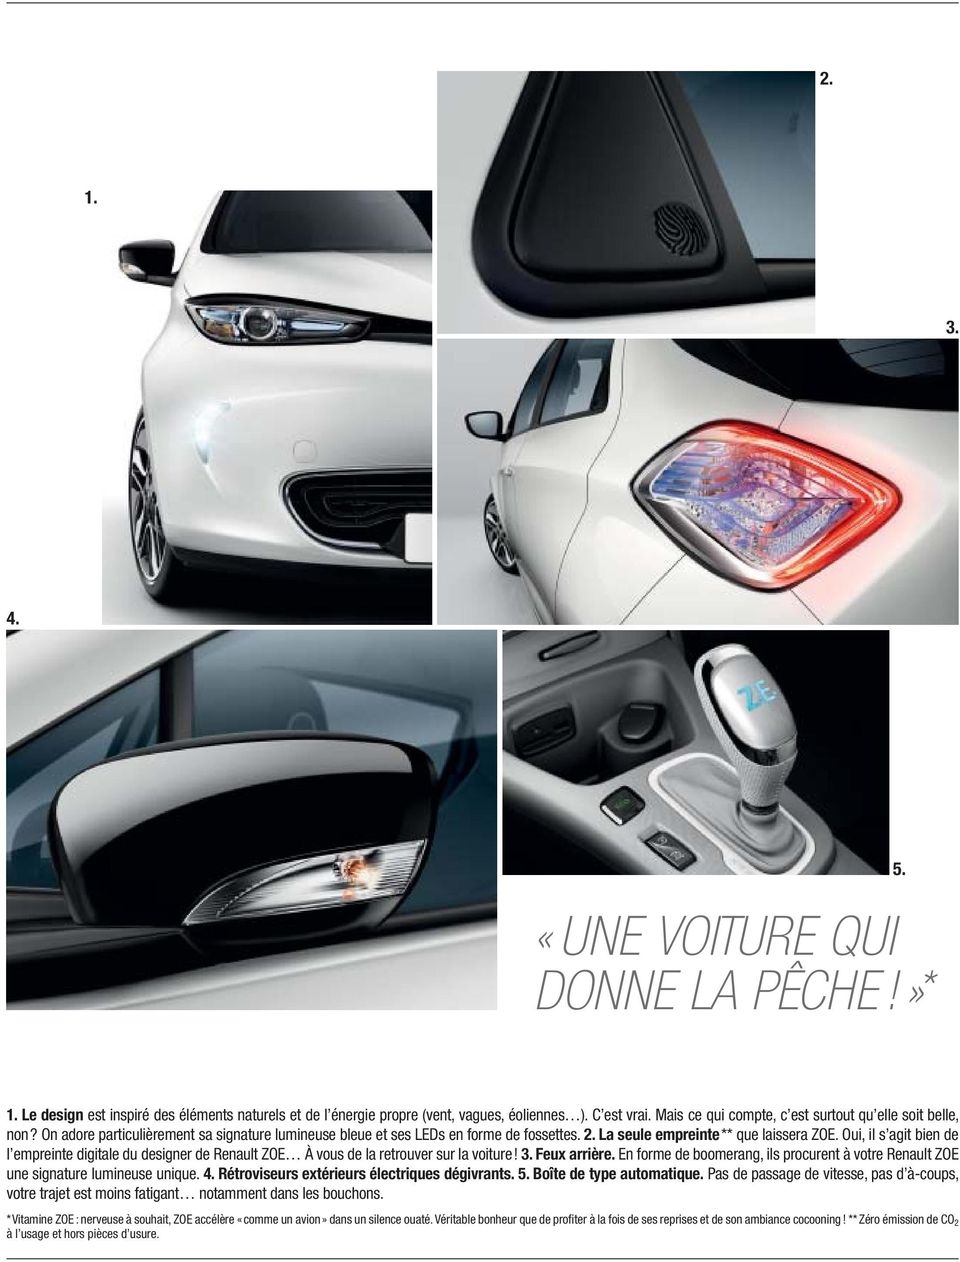 Oui, il s agit bien de l empreinte digitale du designer de Renault ZOE À vous de la retrouver sur la voiture! 3. Feux arrière.